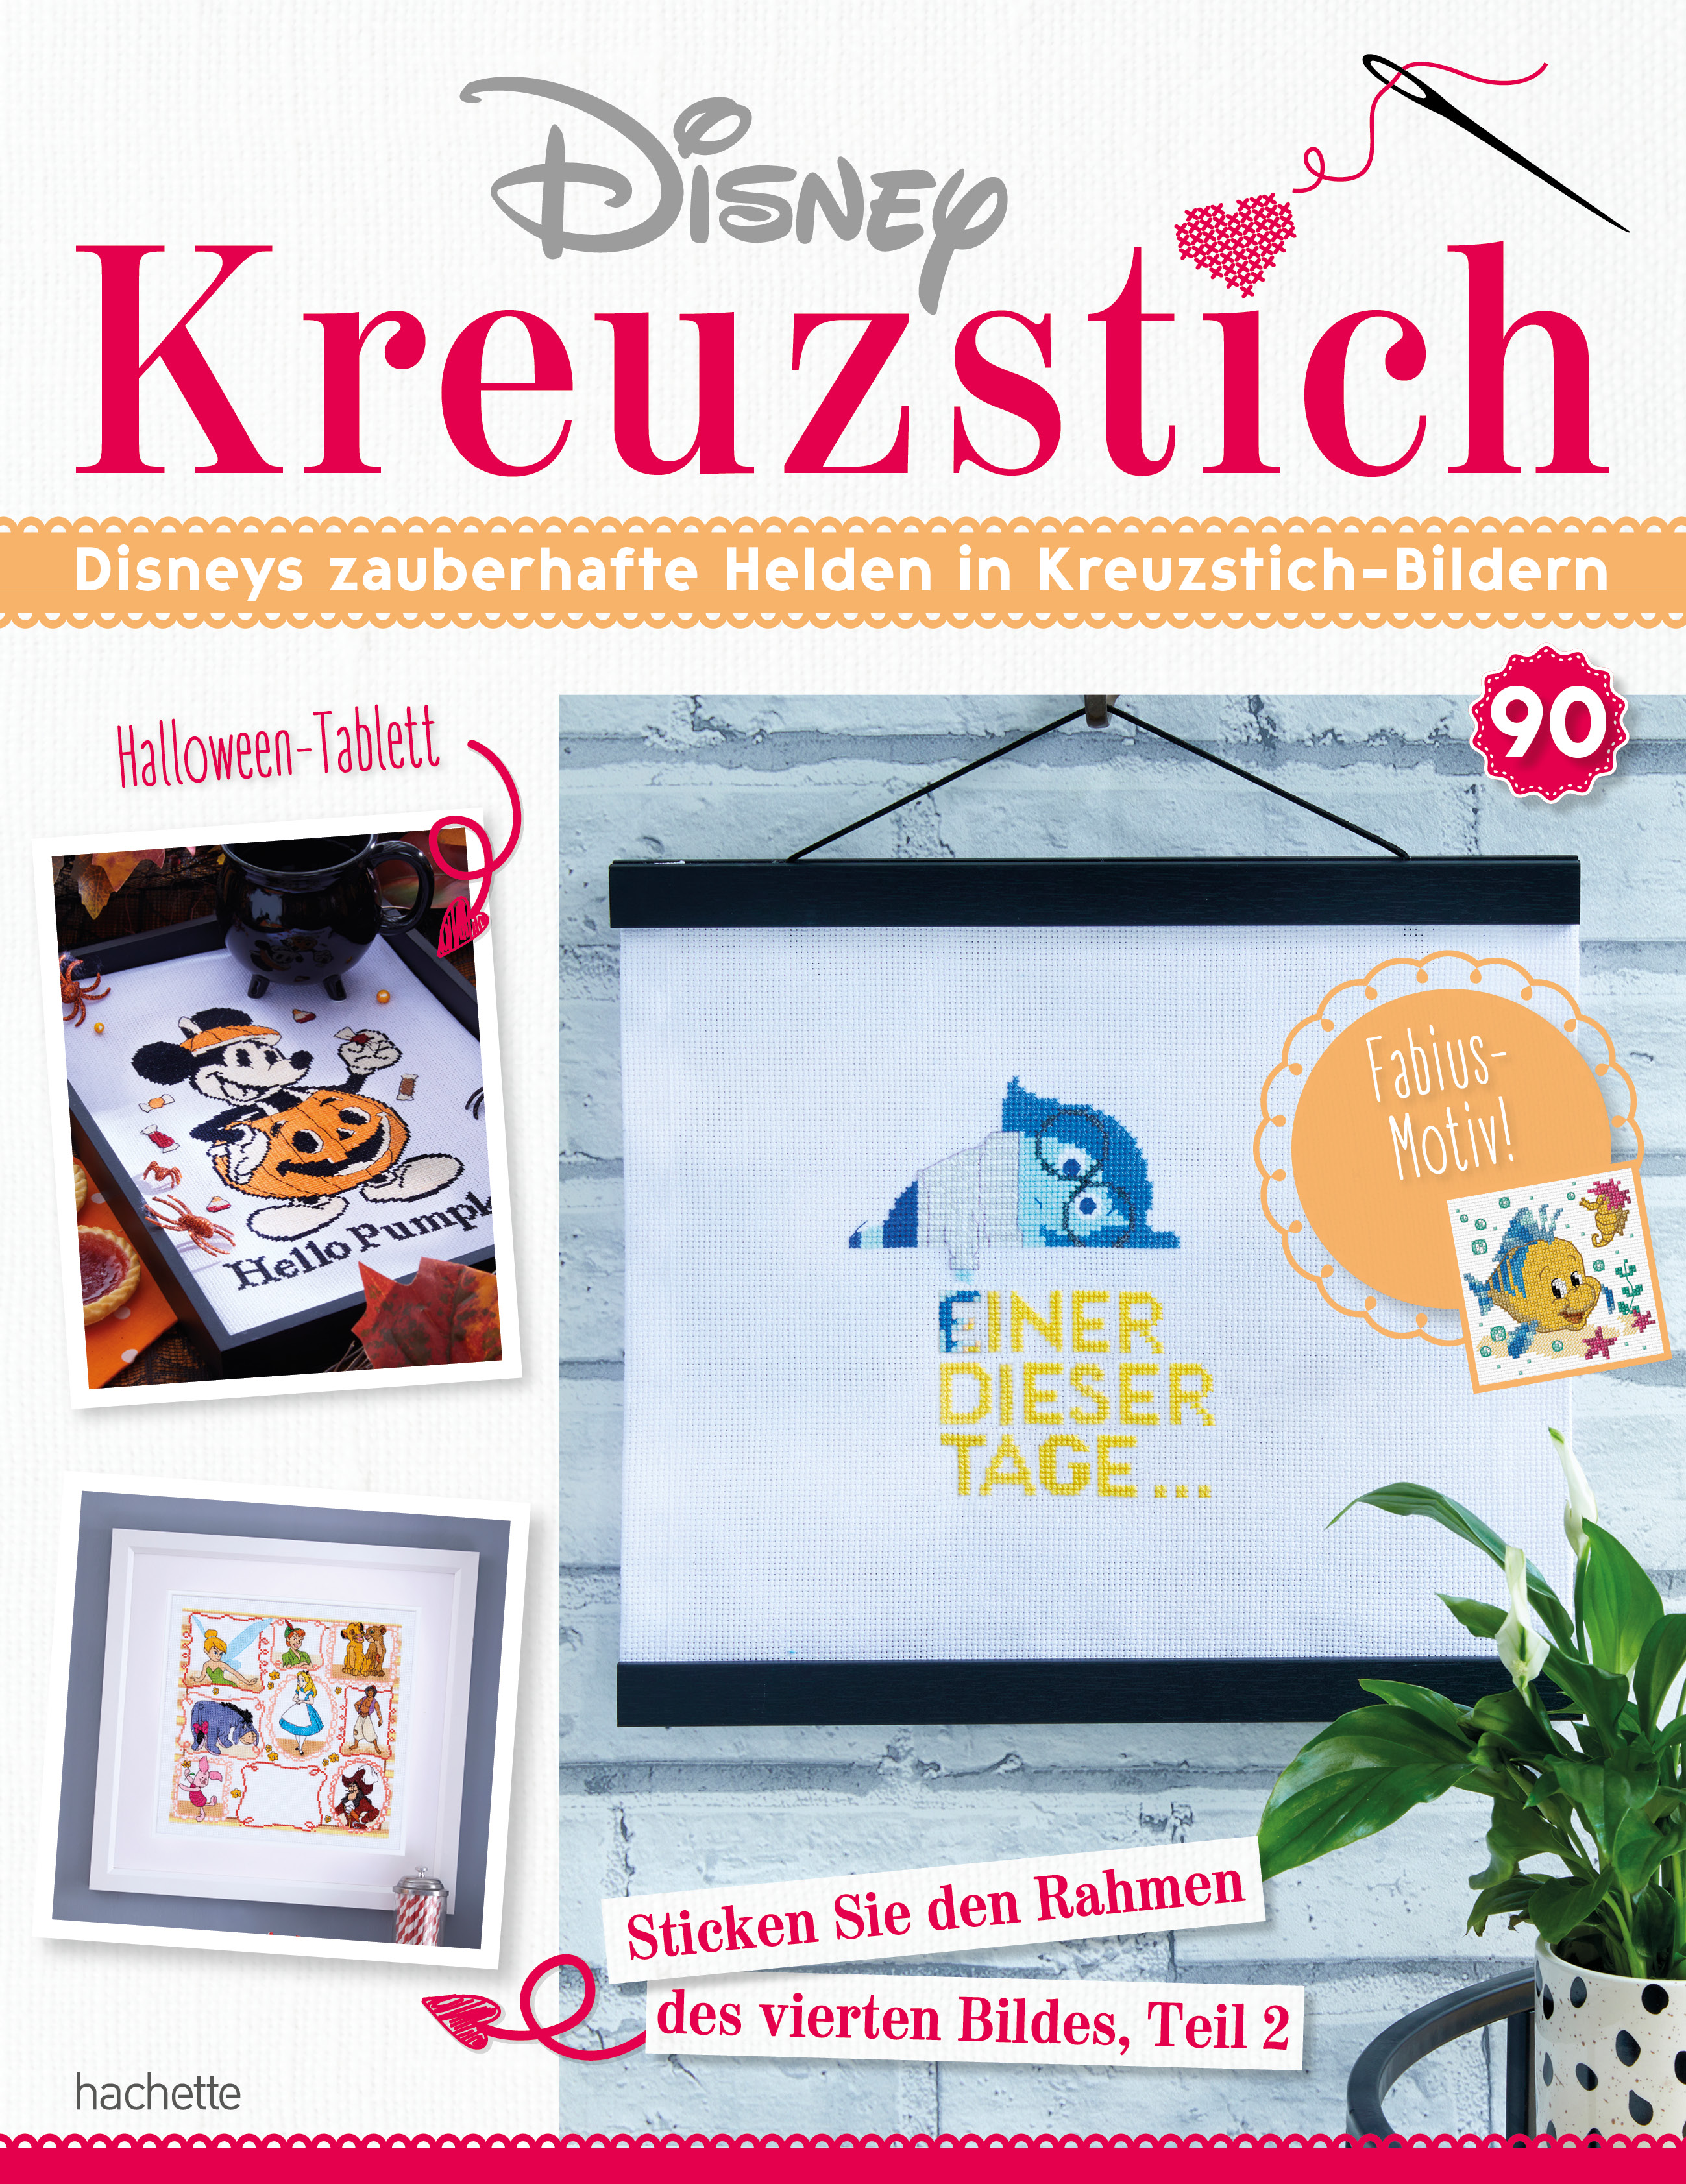 Disney Kreuzstich – Ausgabe 090